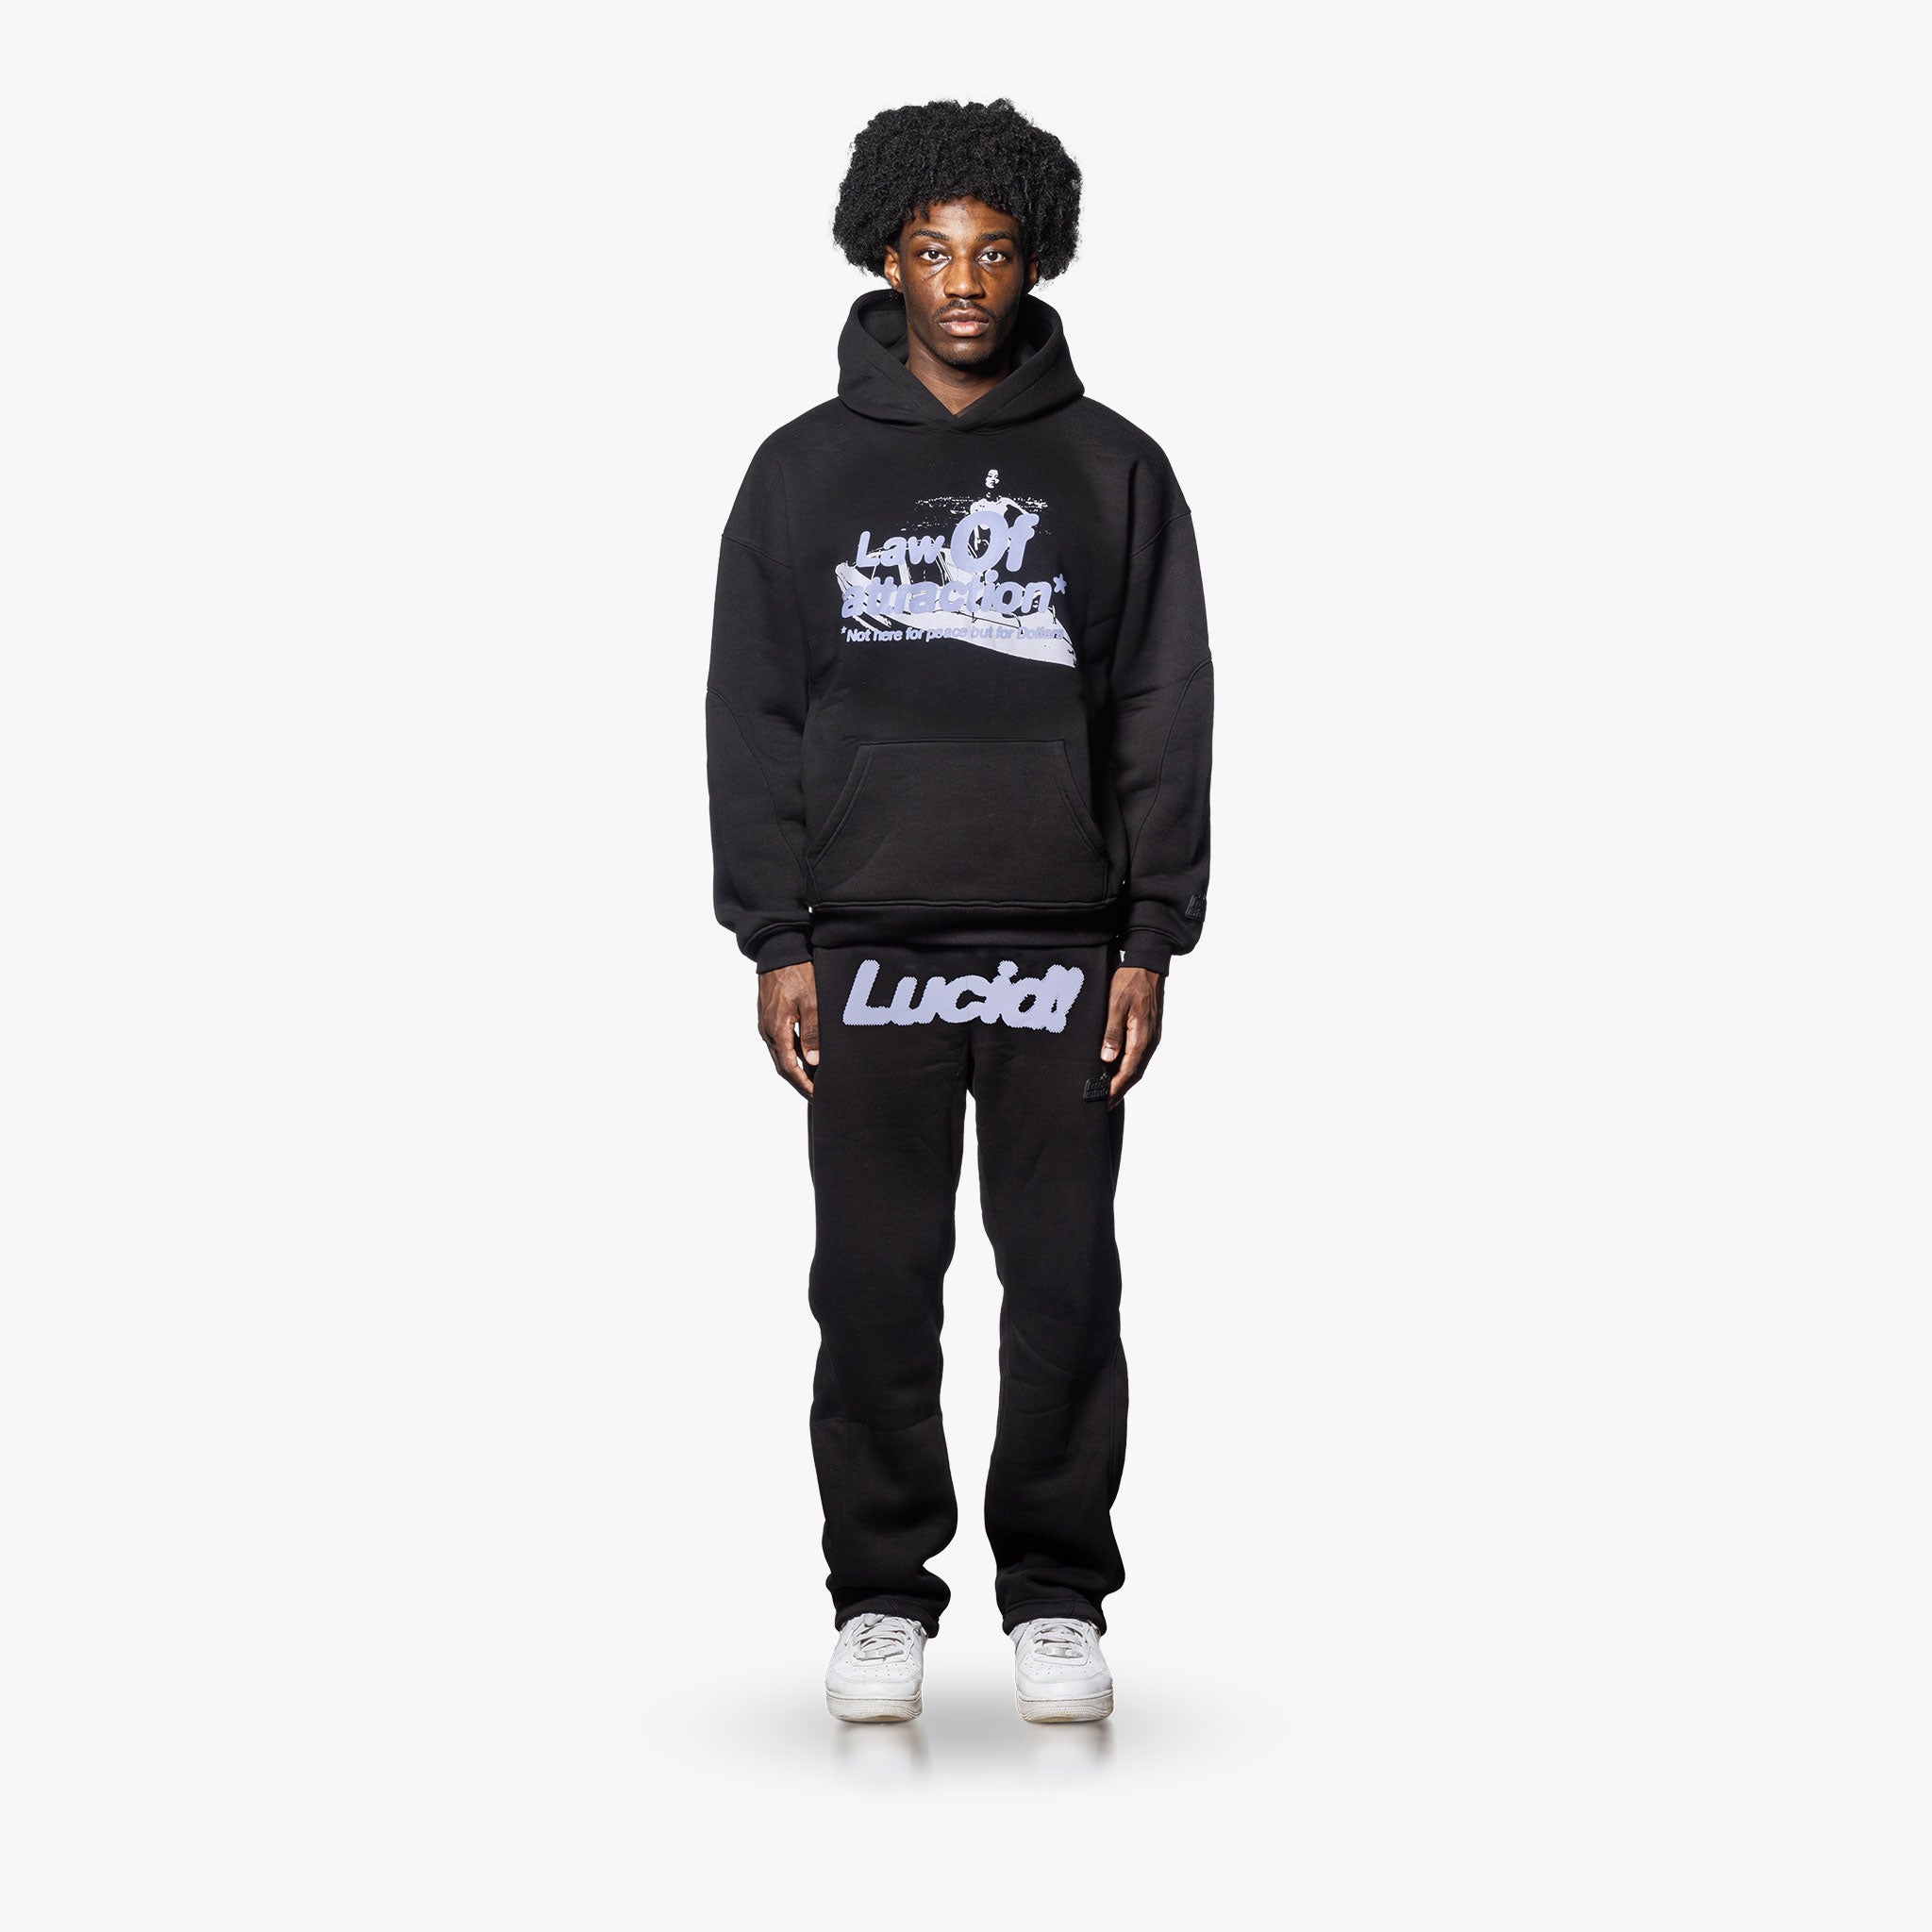 LOA Sweatpants "Black" - Lucid Club